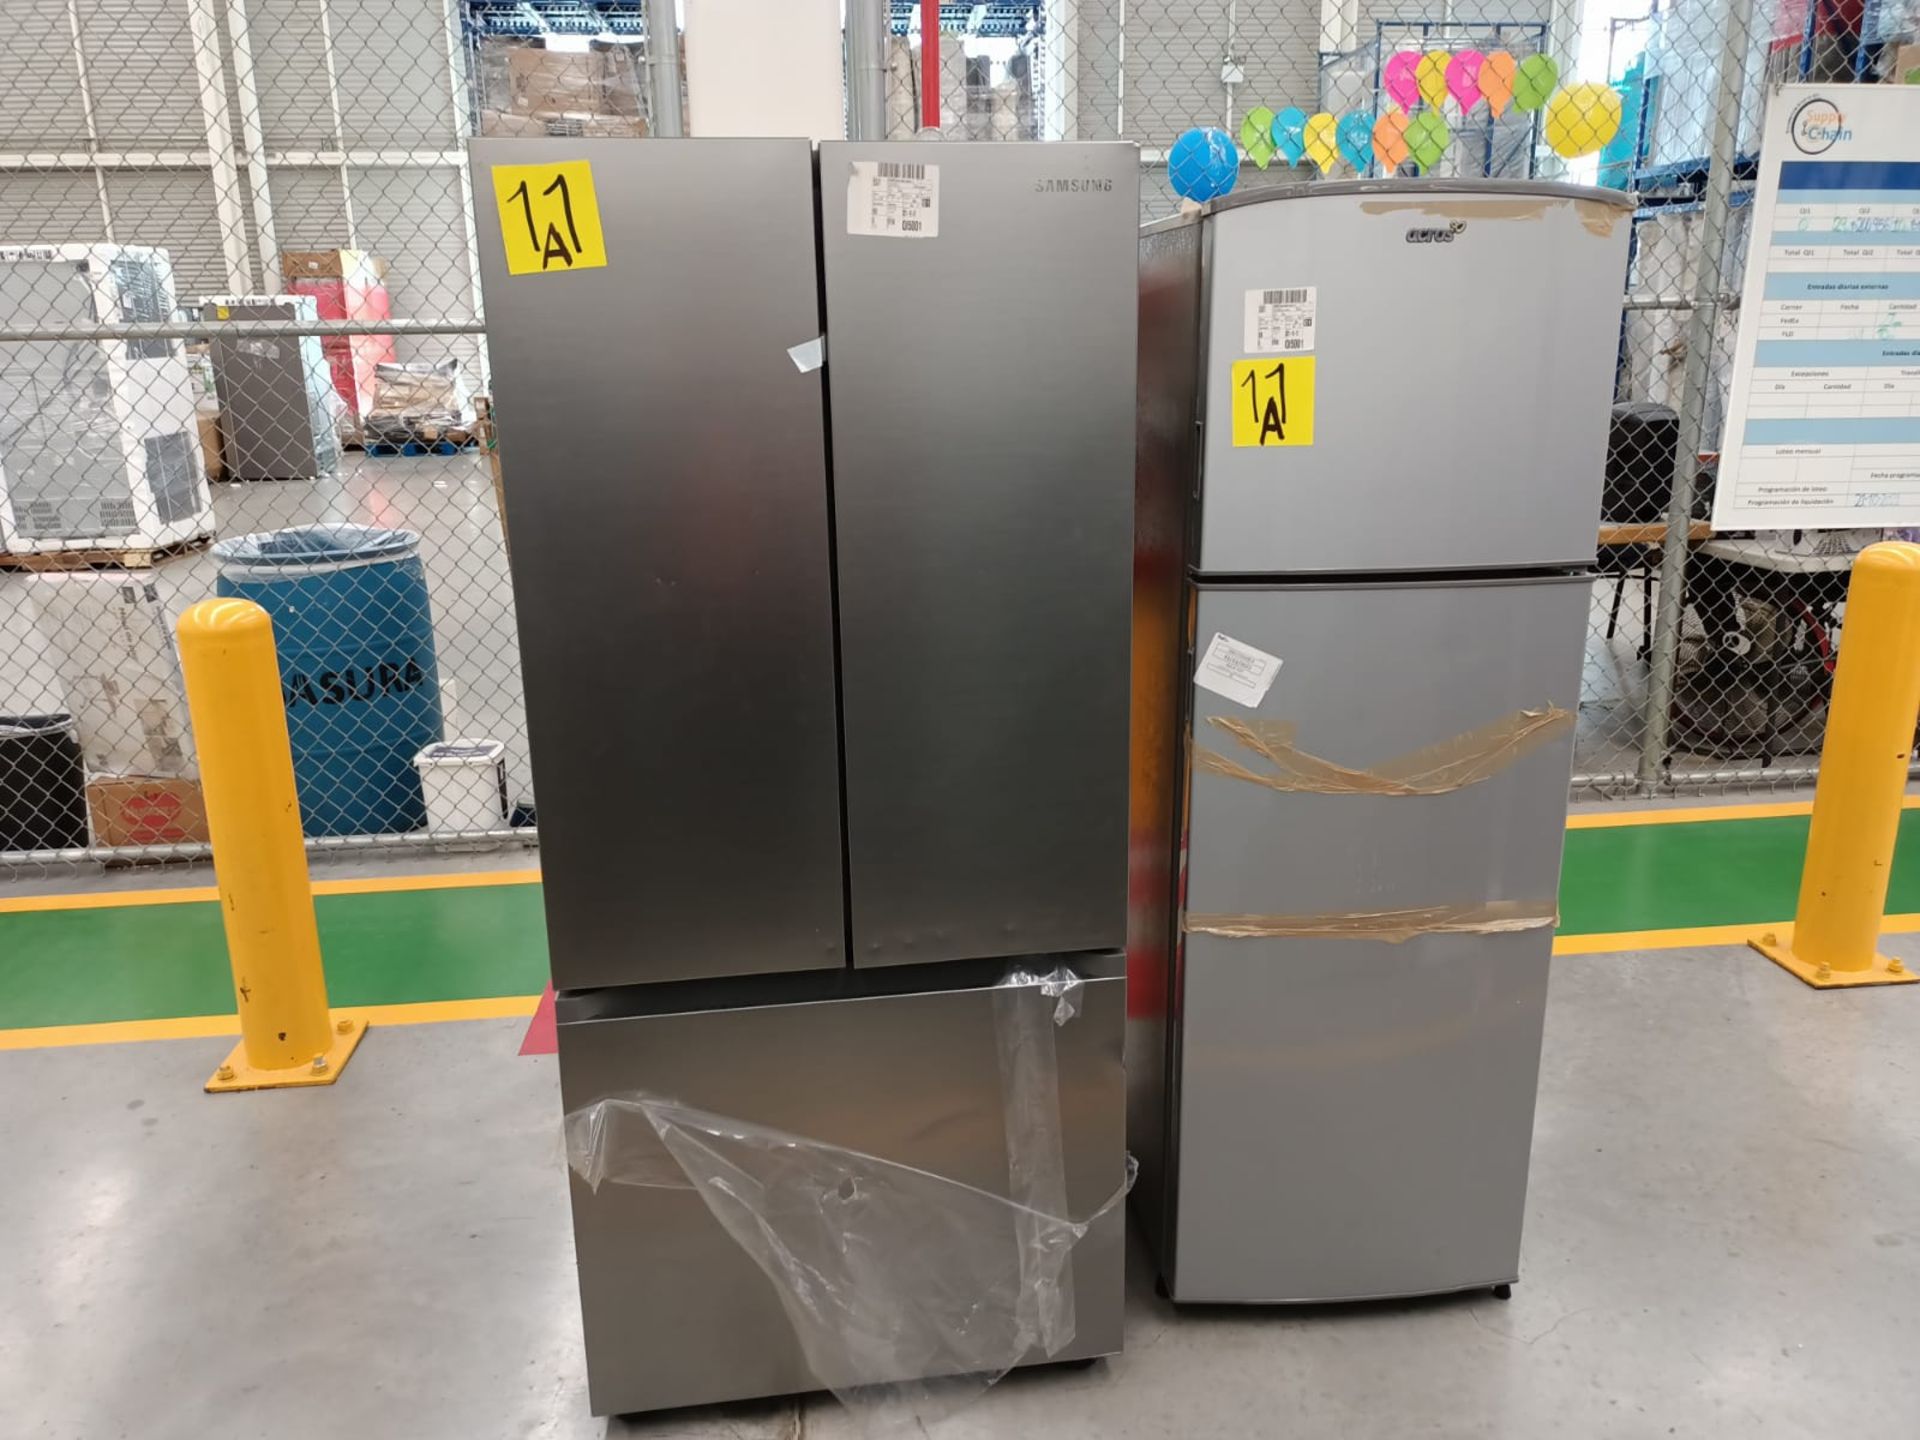 Lote de 2 refrigeradores incluye: 1 refrigerador marca Samsung, modelo RF22A4010S9/EM - Image 36 of 51